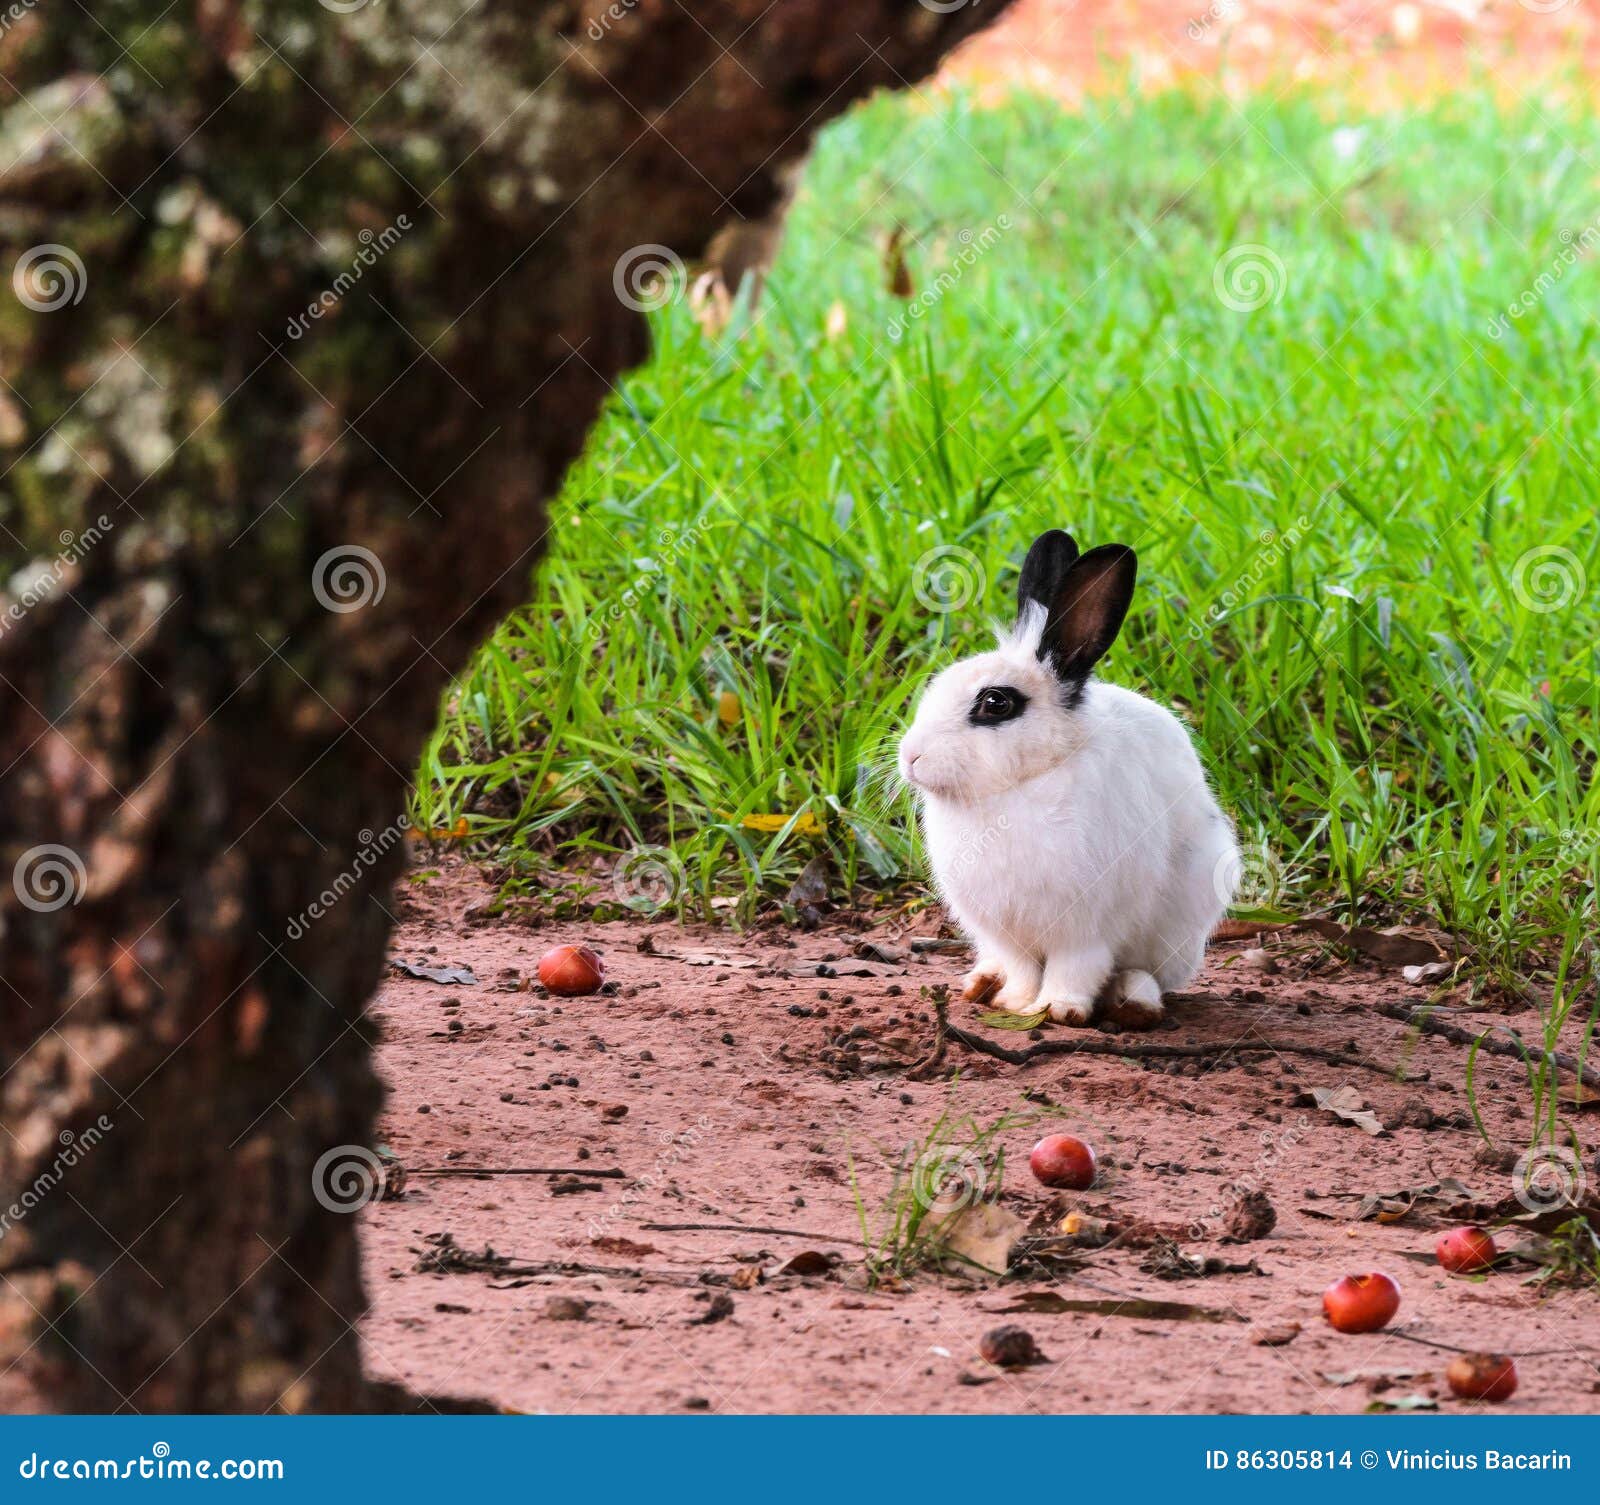 White rabbit nature stock photo. looking -